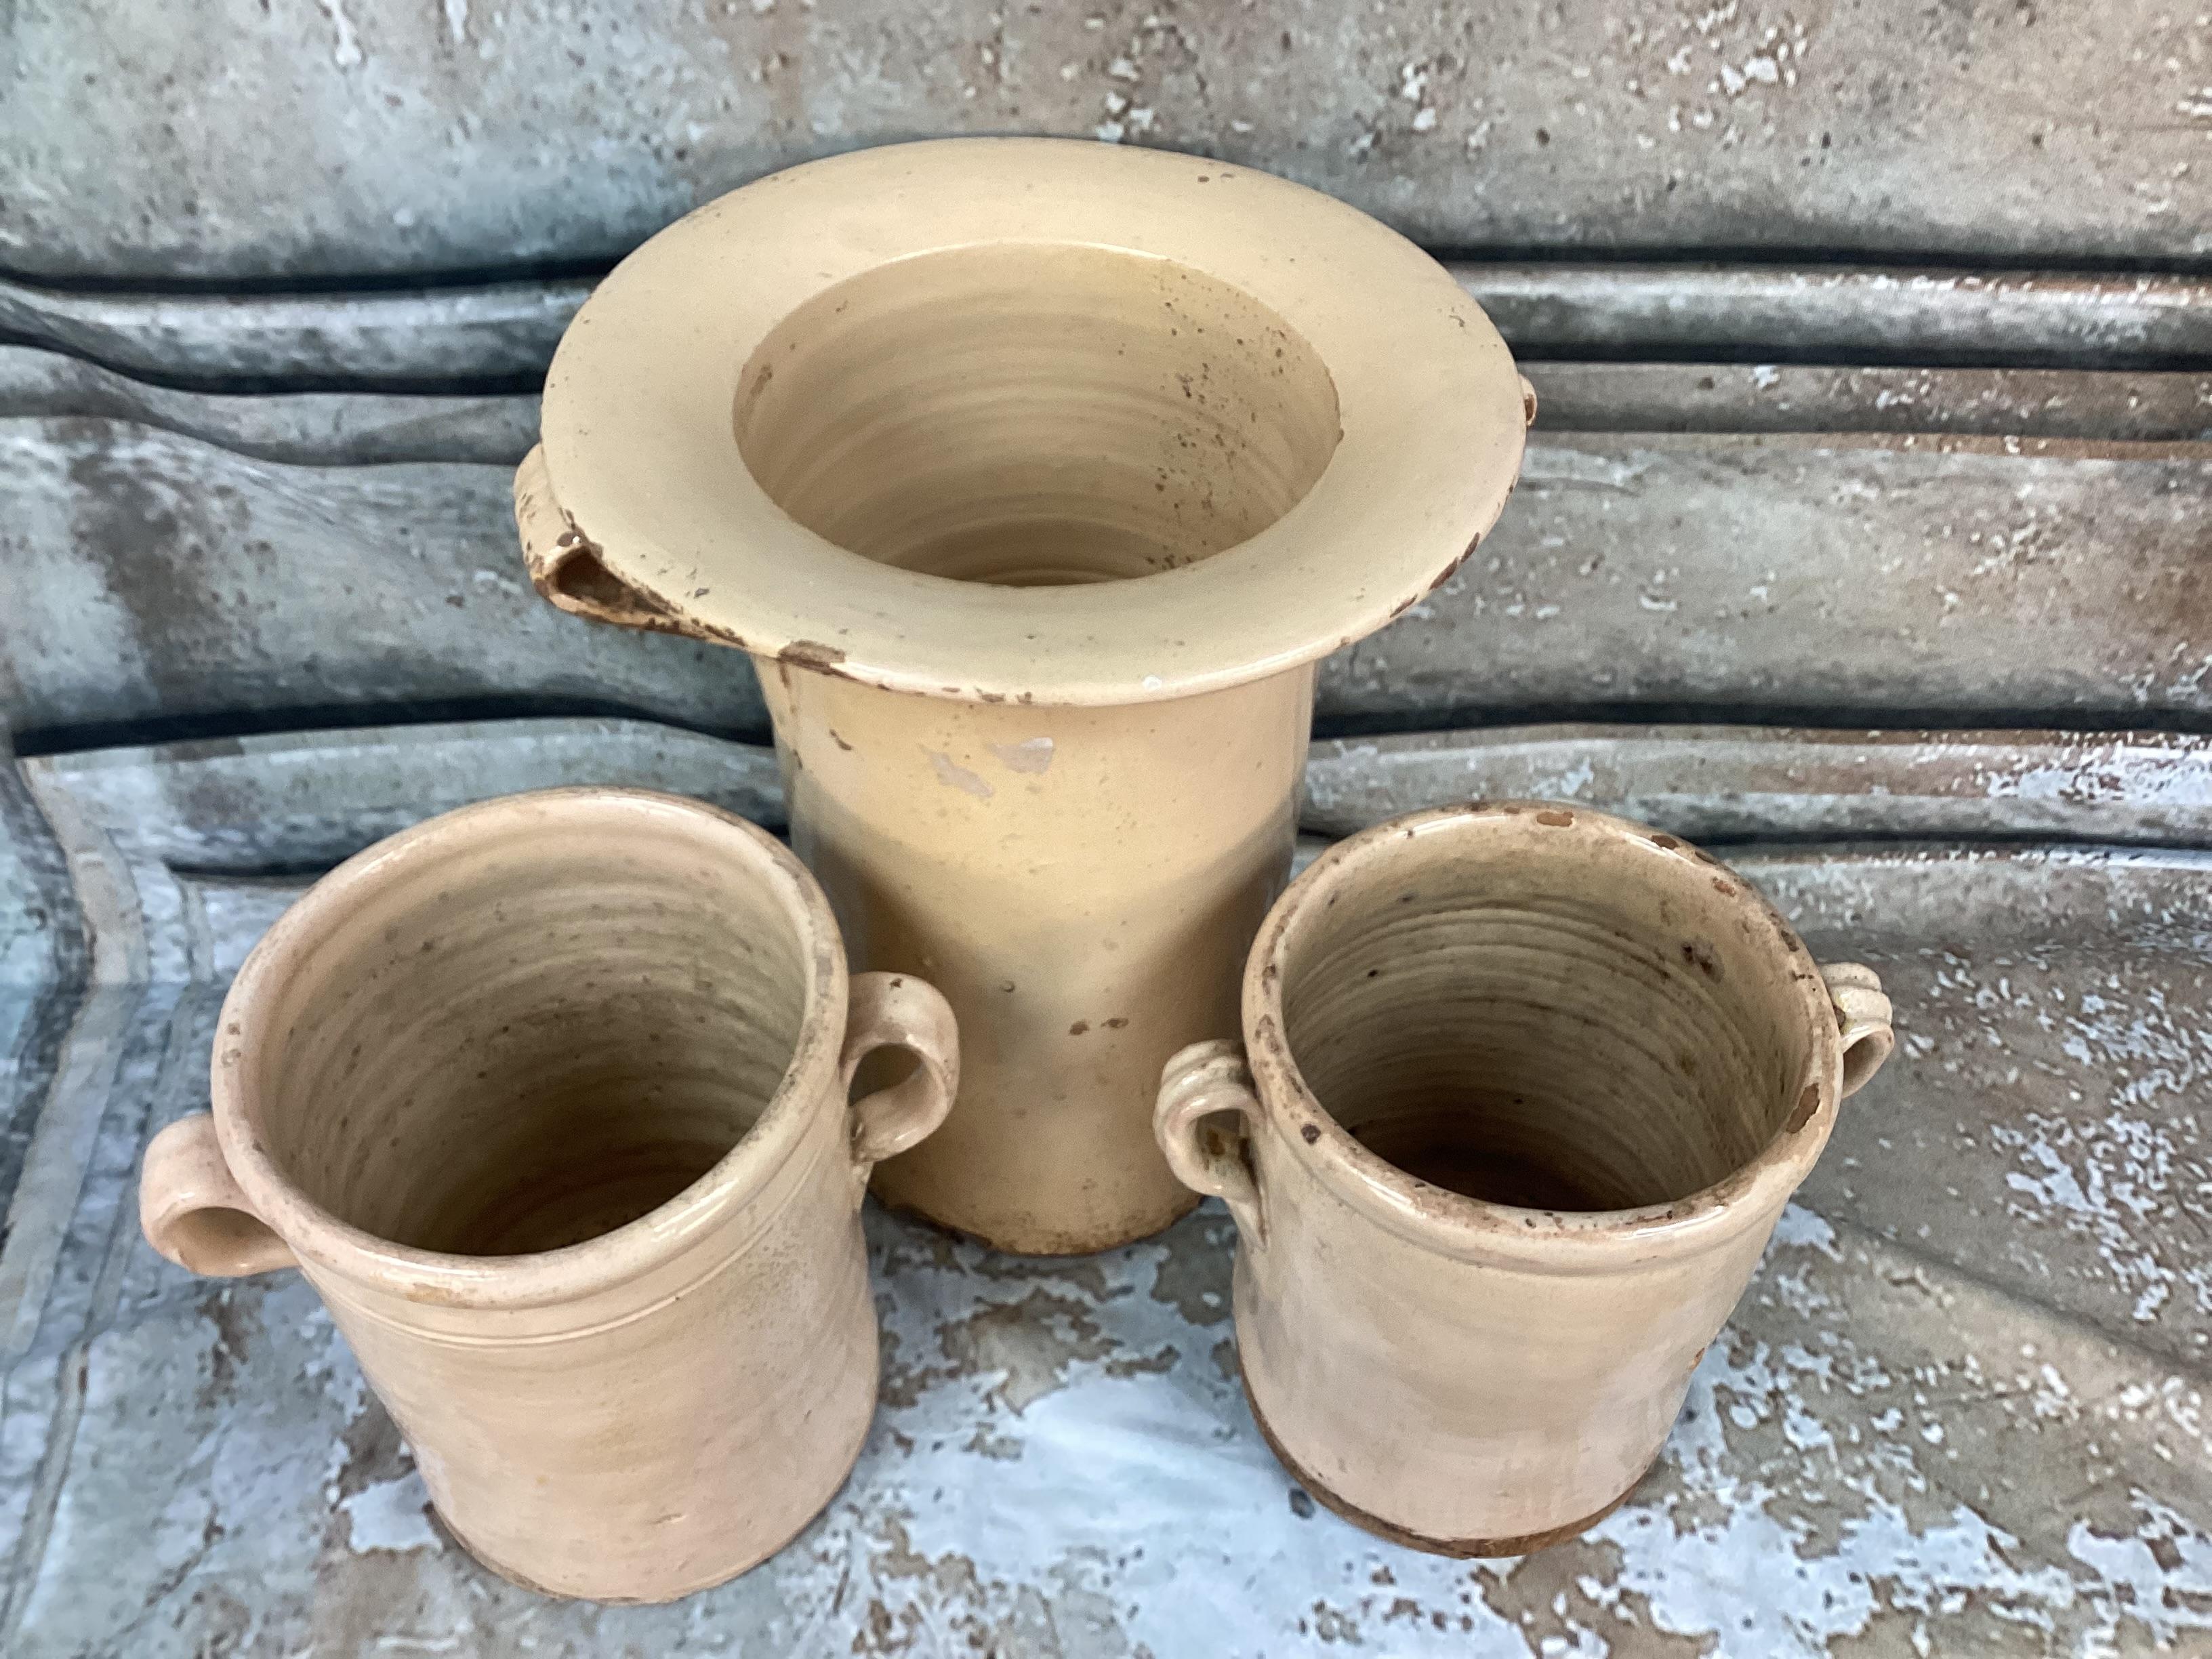 Fabuleux ensemble de trois pots de conservation pour chiminea en céramique italienne du 19e siècle avec poignées. Ces pots servaient à conserver les aliments tels que les fruits, la viande ou les légumes. Ils ont été conçus pour être utilisés en